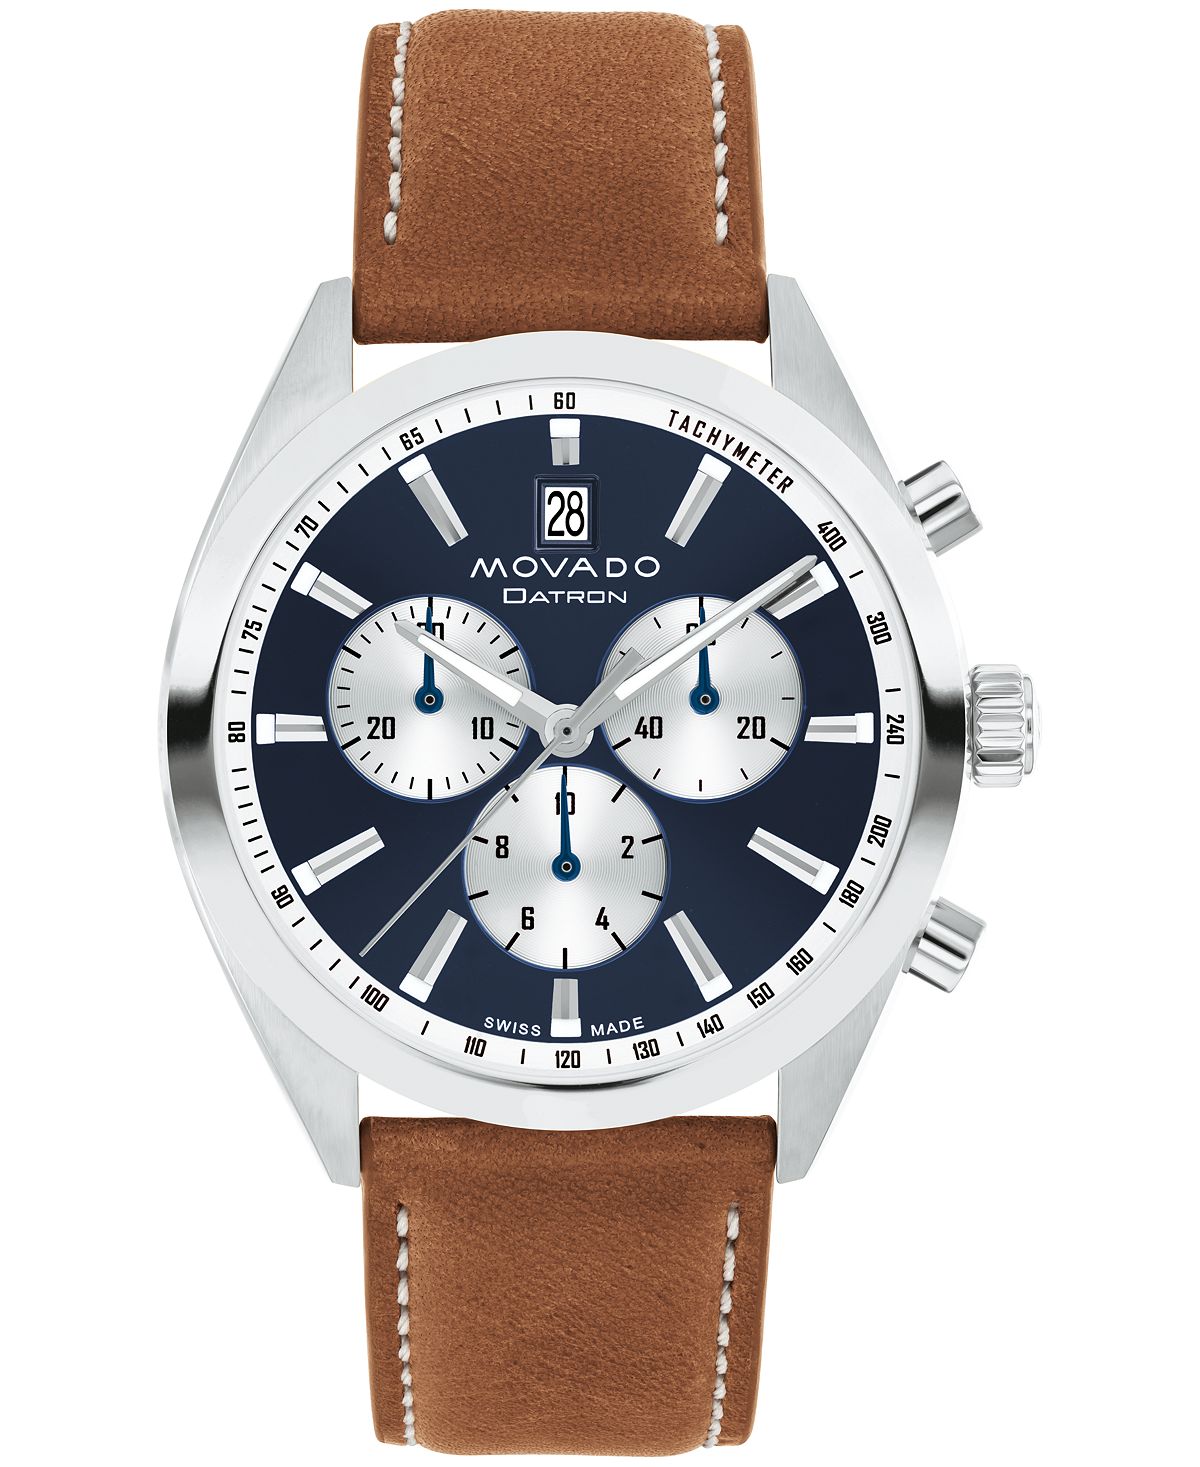 Мужские часы Datron Swiss Quartz Chrono Cognac кожаные 40 мм Movado наручные часы hamilton jazzmaster chrono quartz